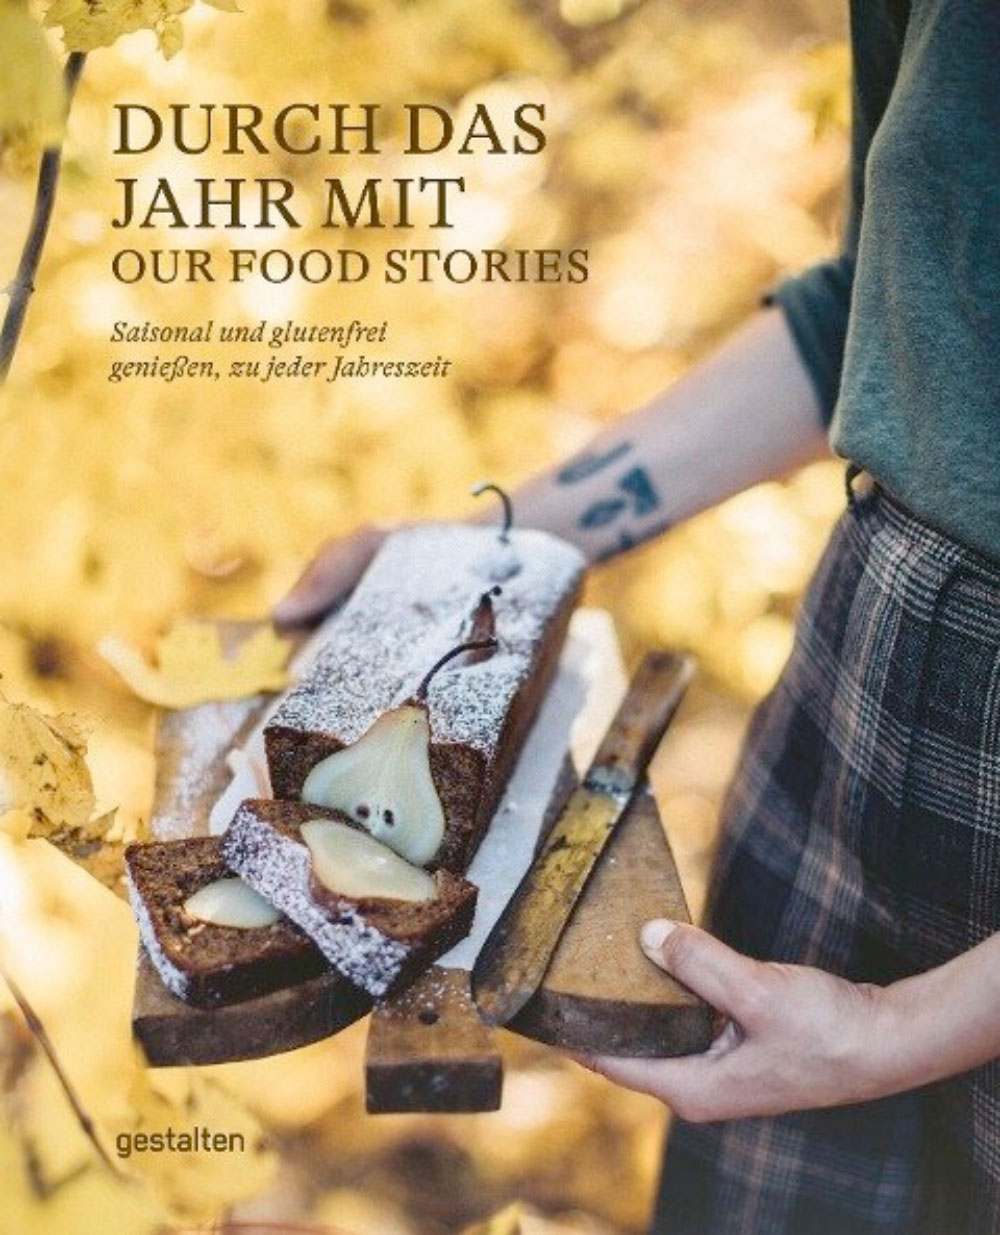 »Durch das Jahr mit Our Food Stories« — GESTALTEN